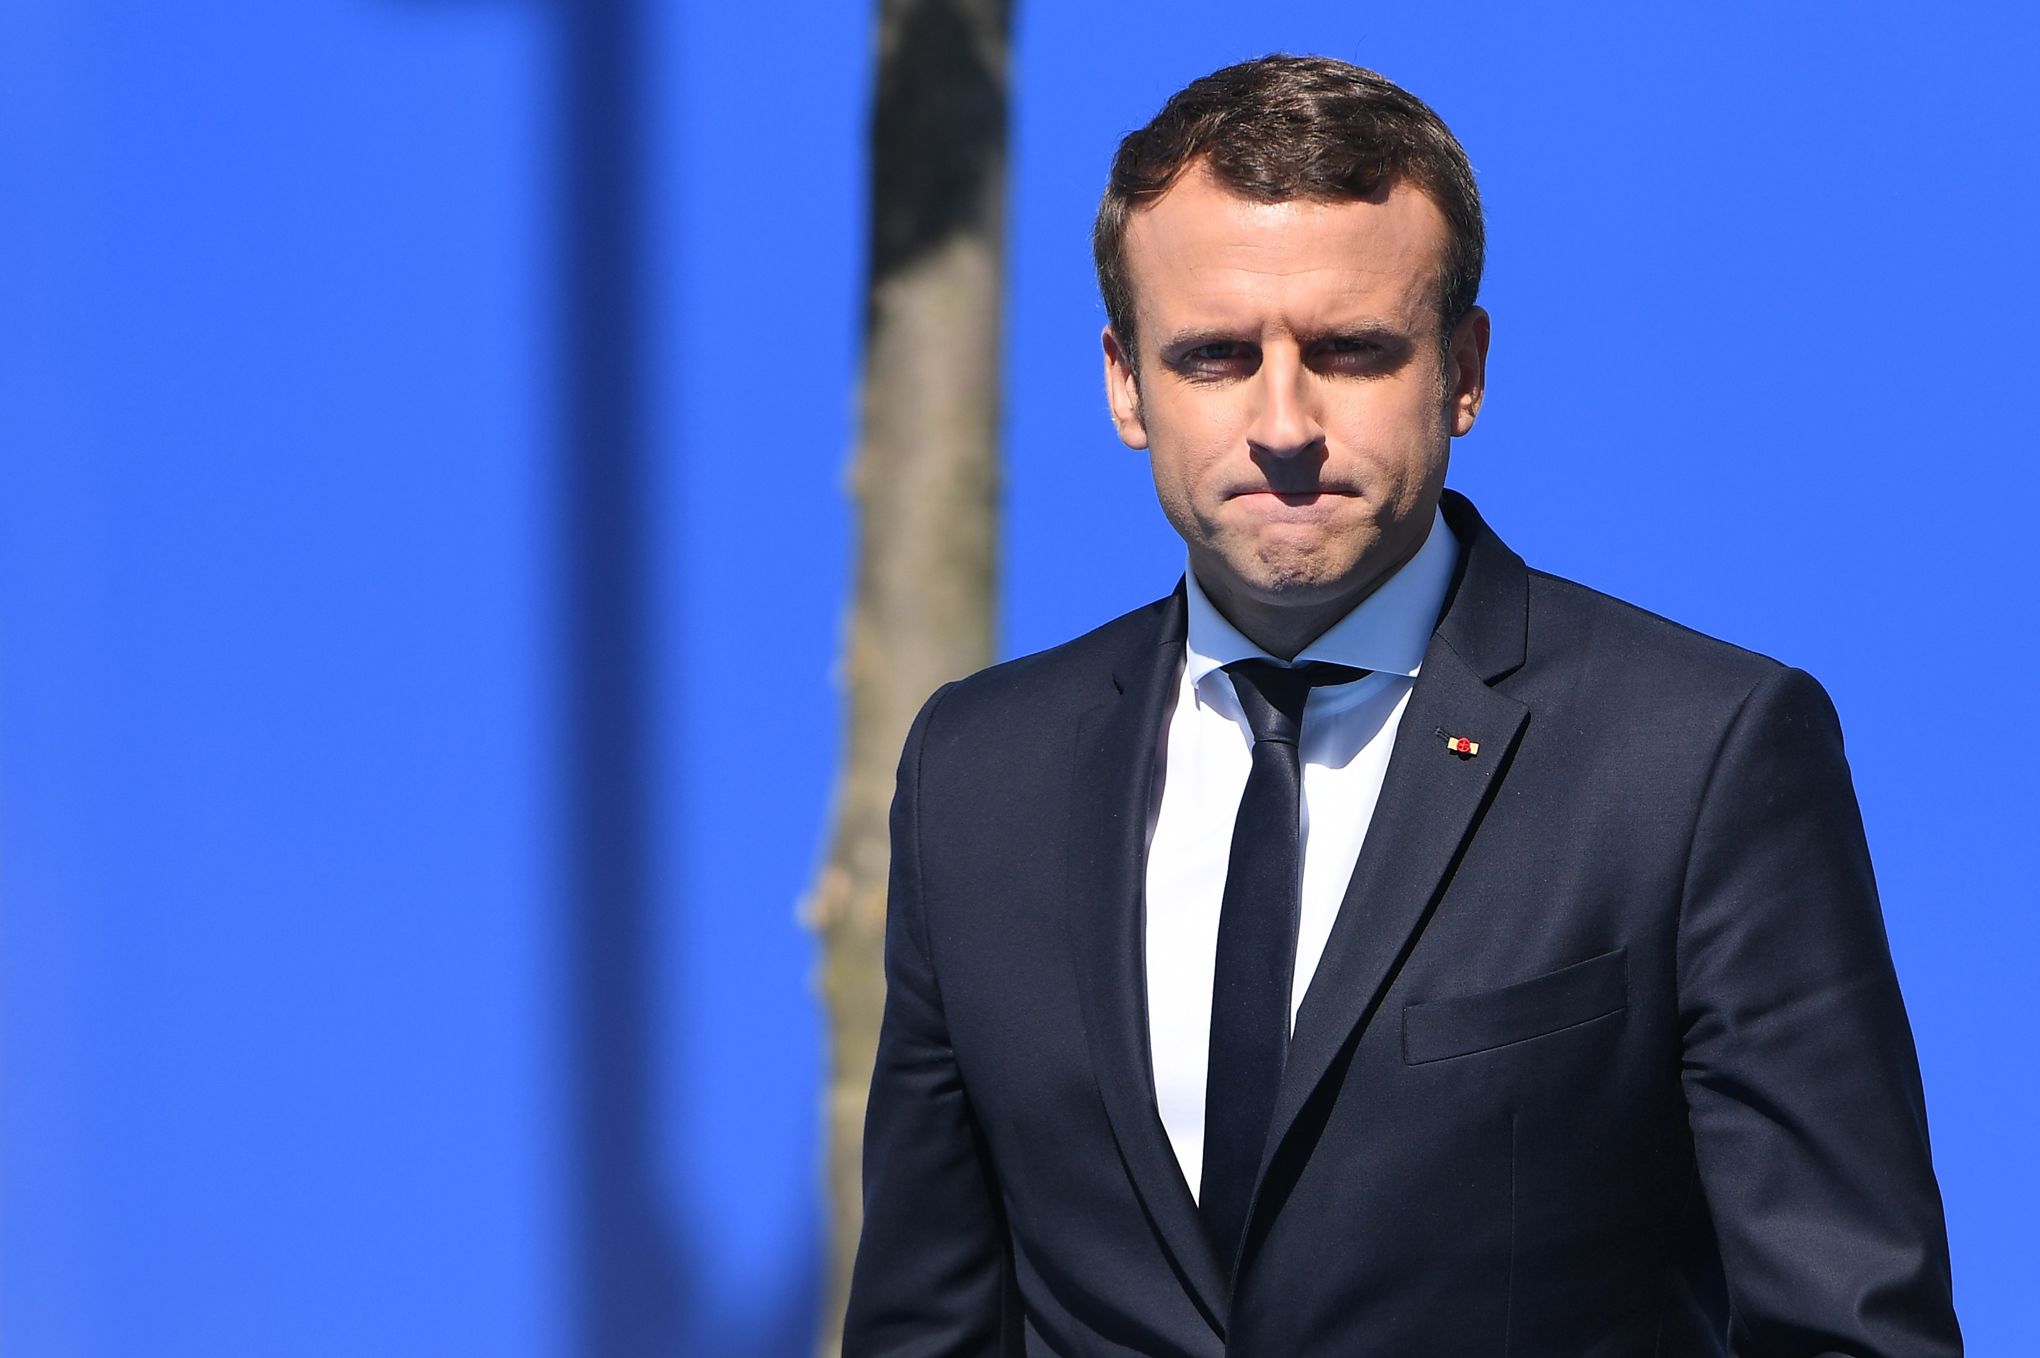 Premier sommet européen de Macron : le dessous des cartes